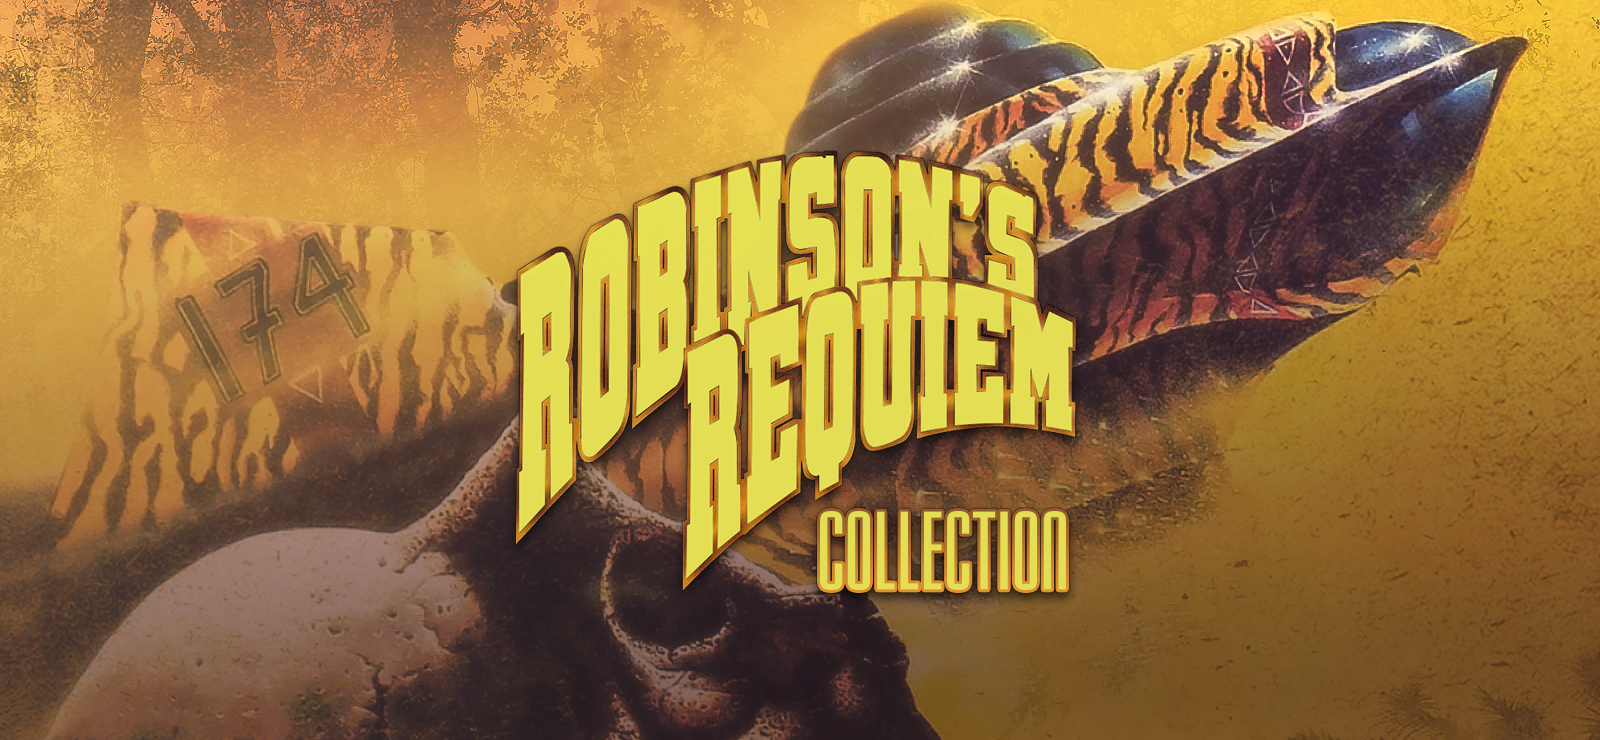 Robinson's Requiem Collection